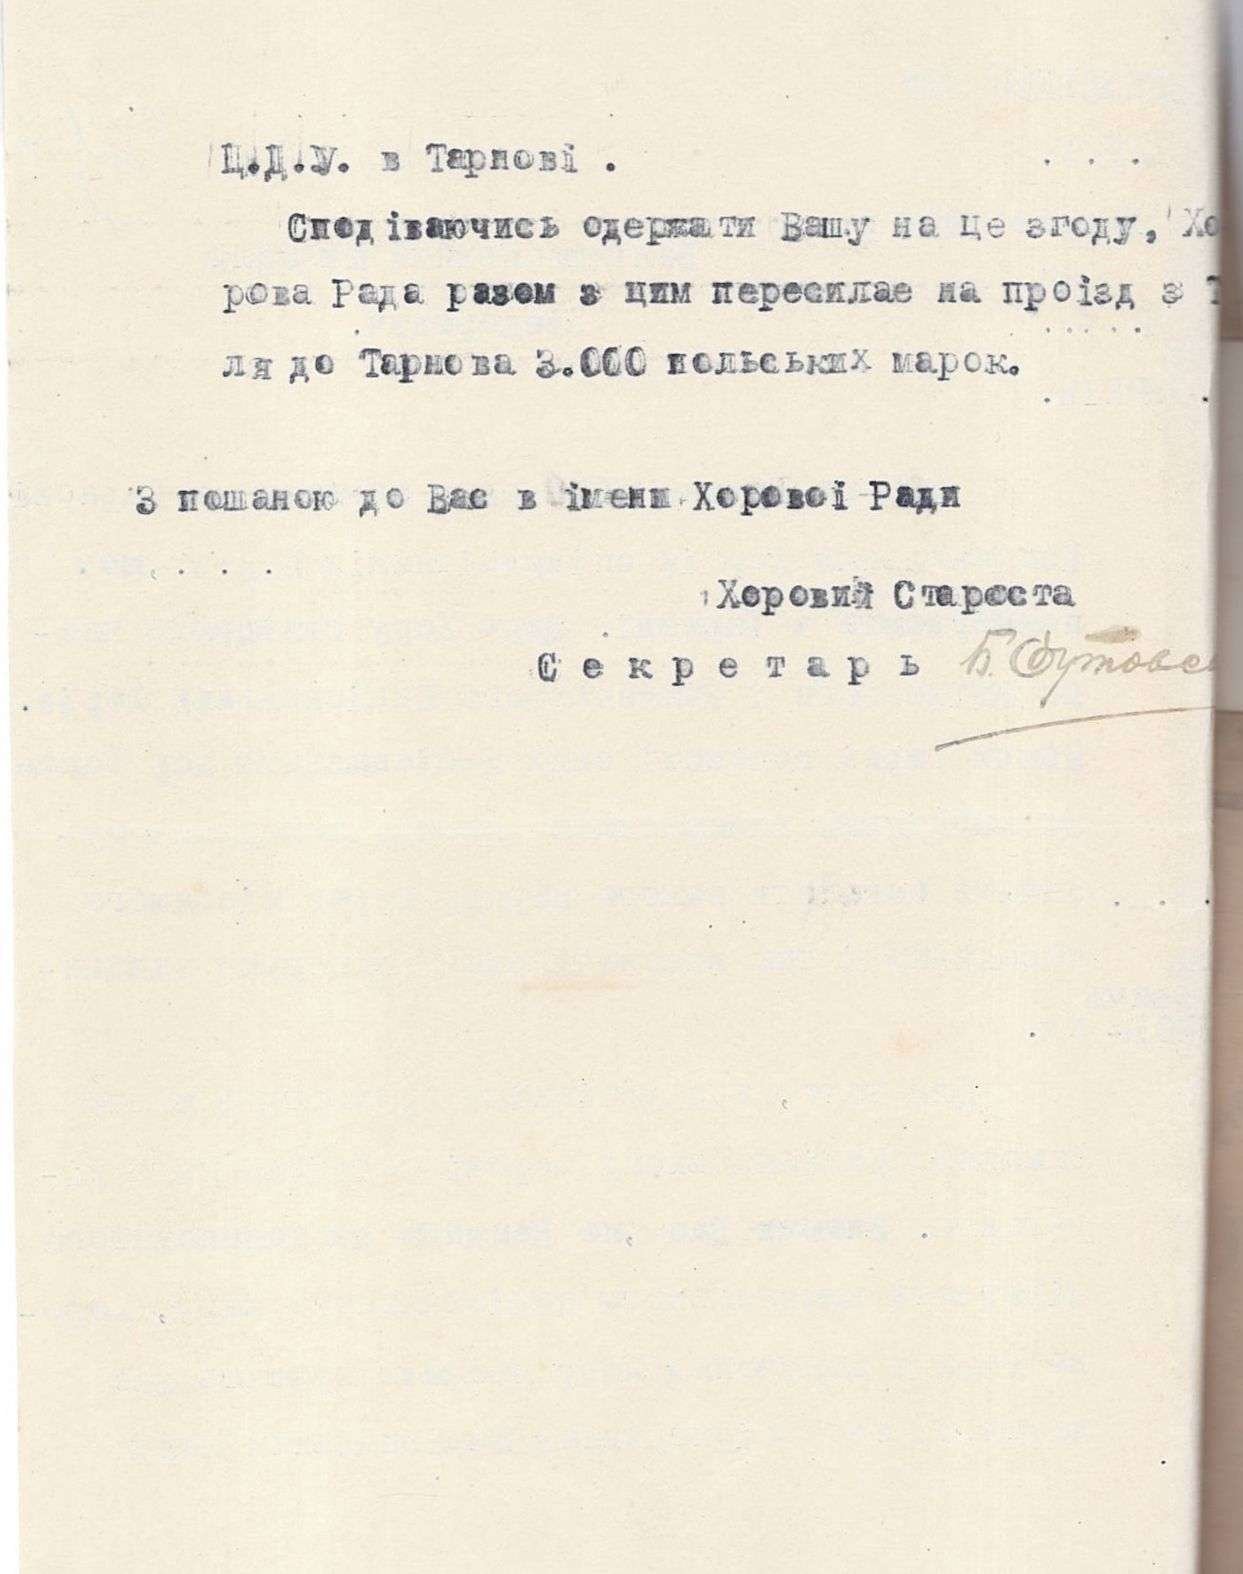 Лист Національного хору Центральних державних установ у Тарнові Михайлу Тележинському з проханням зайняти посаду диригента хору. 10 лютого 1921 р.